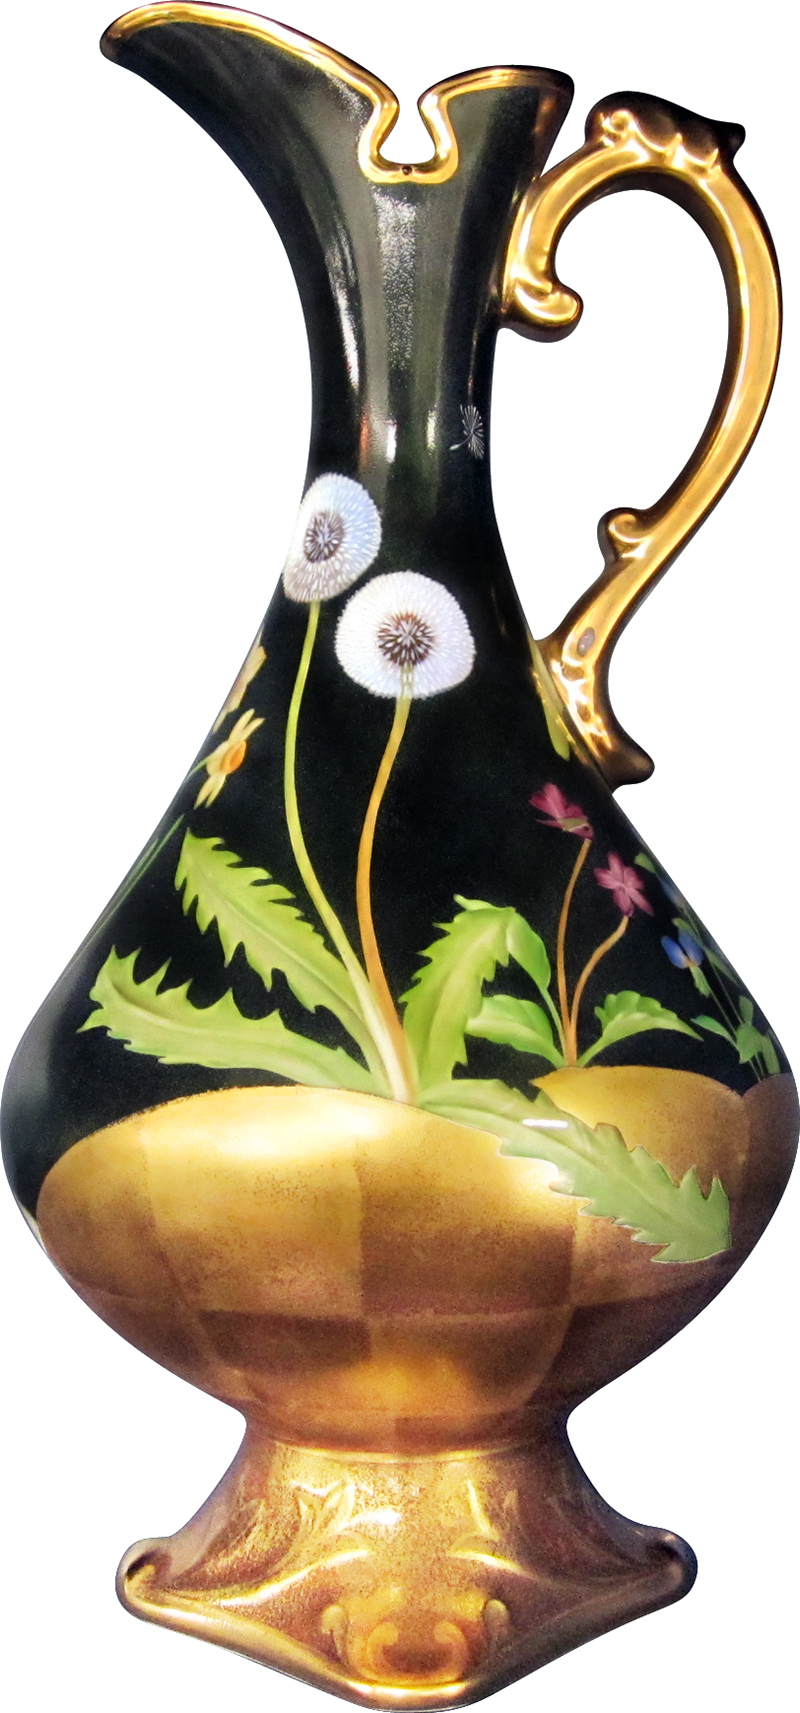 Noritake滿地金手繪花瓶32cm$420,000